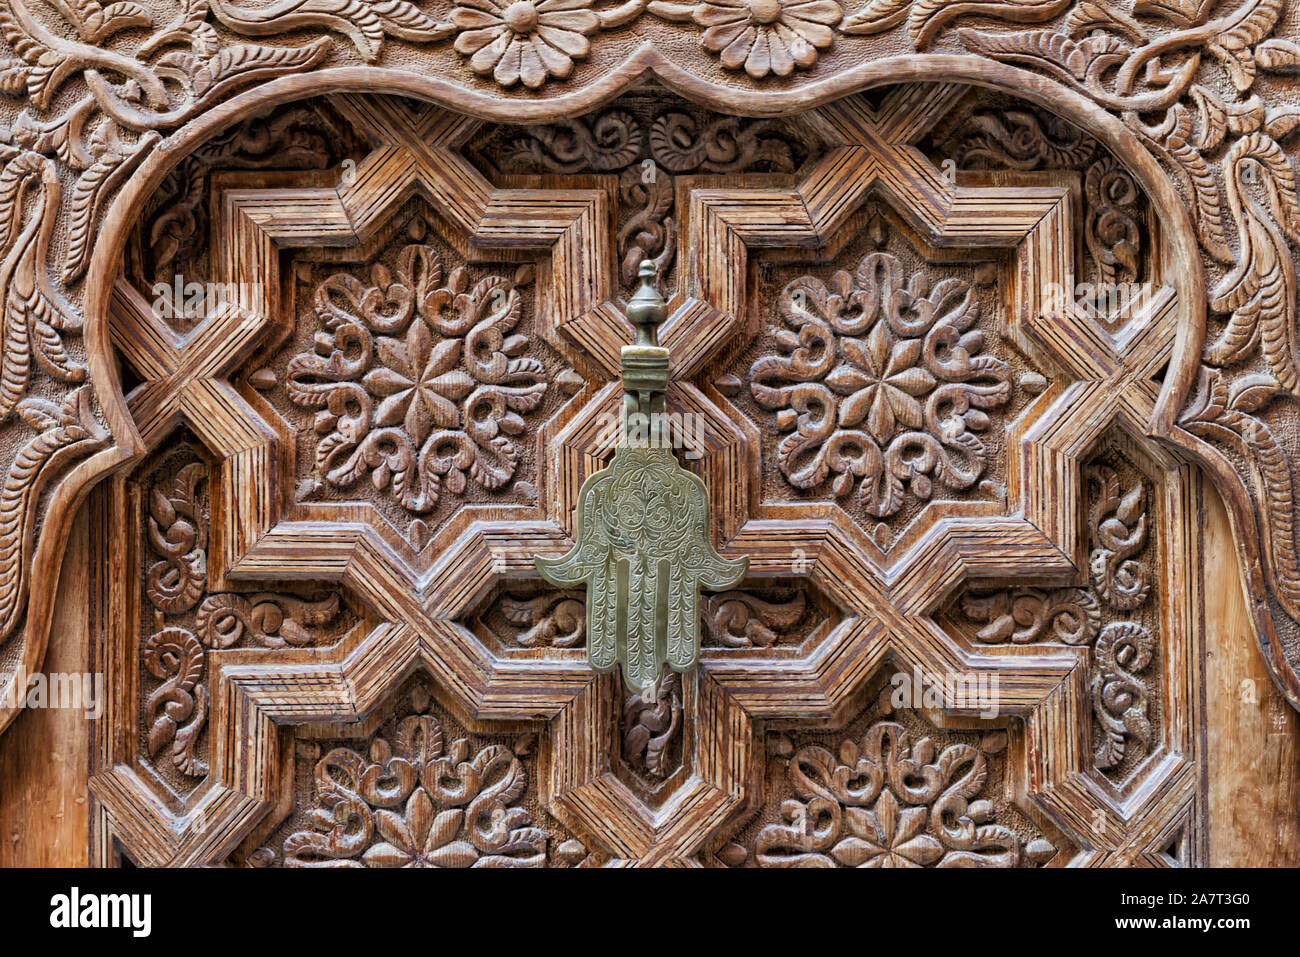 Poignée de porte en fer de la "Main de Fatima" sur un sol en bois, porte marocaine dans la médina de Marrakech, Maroc. Banque D'Images